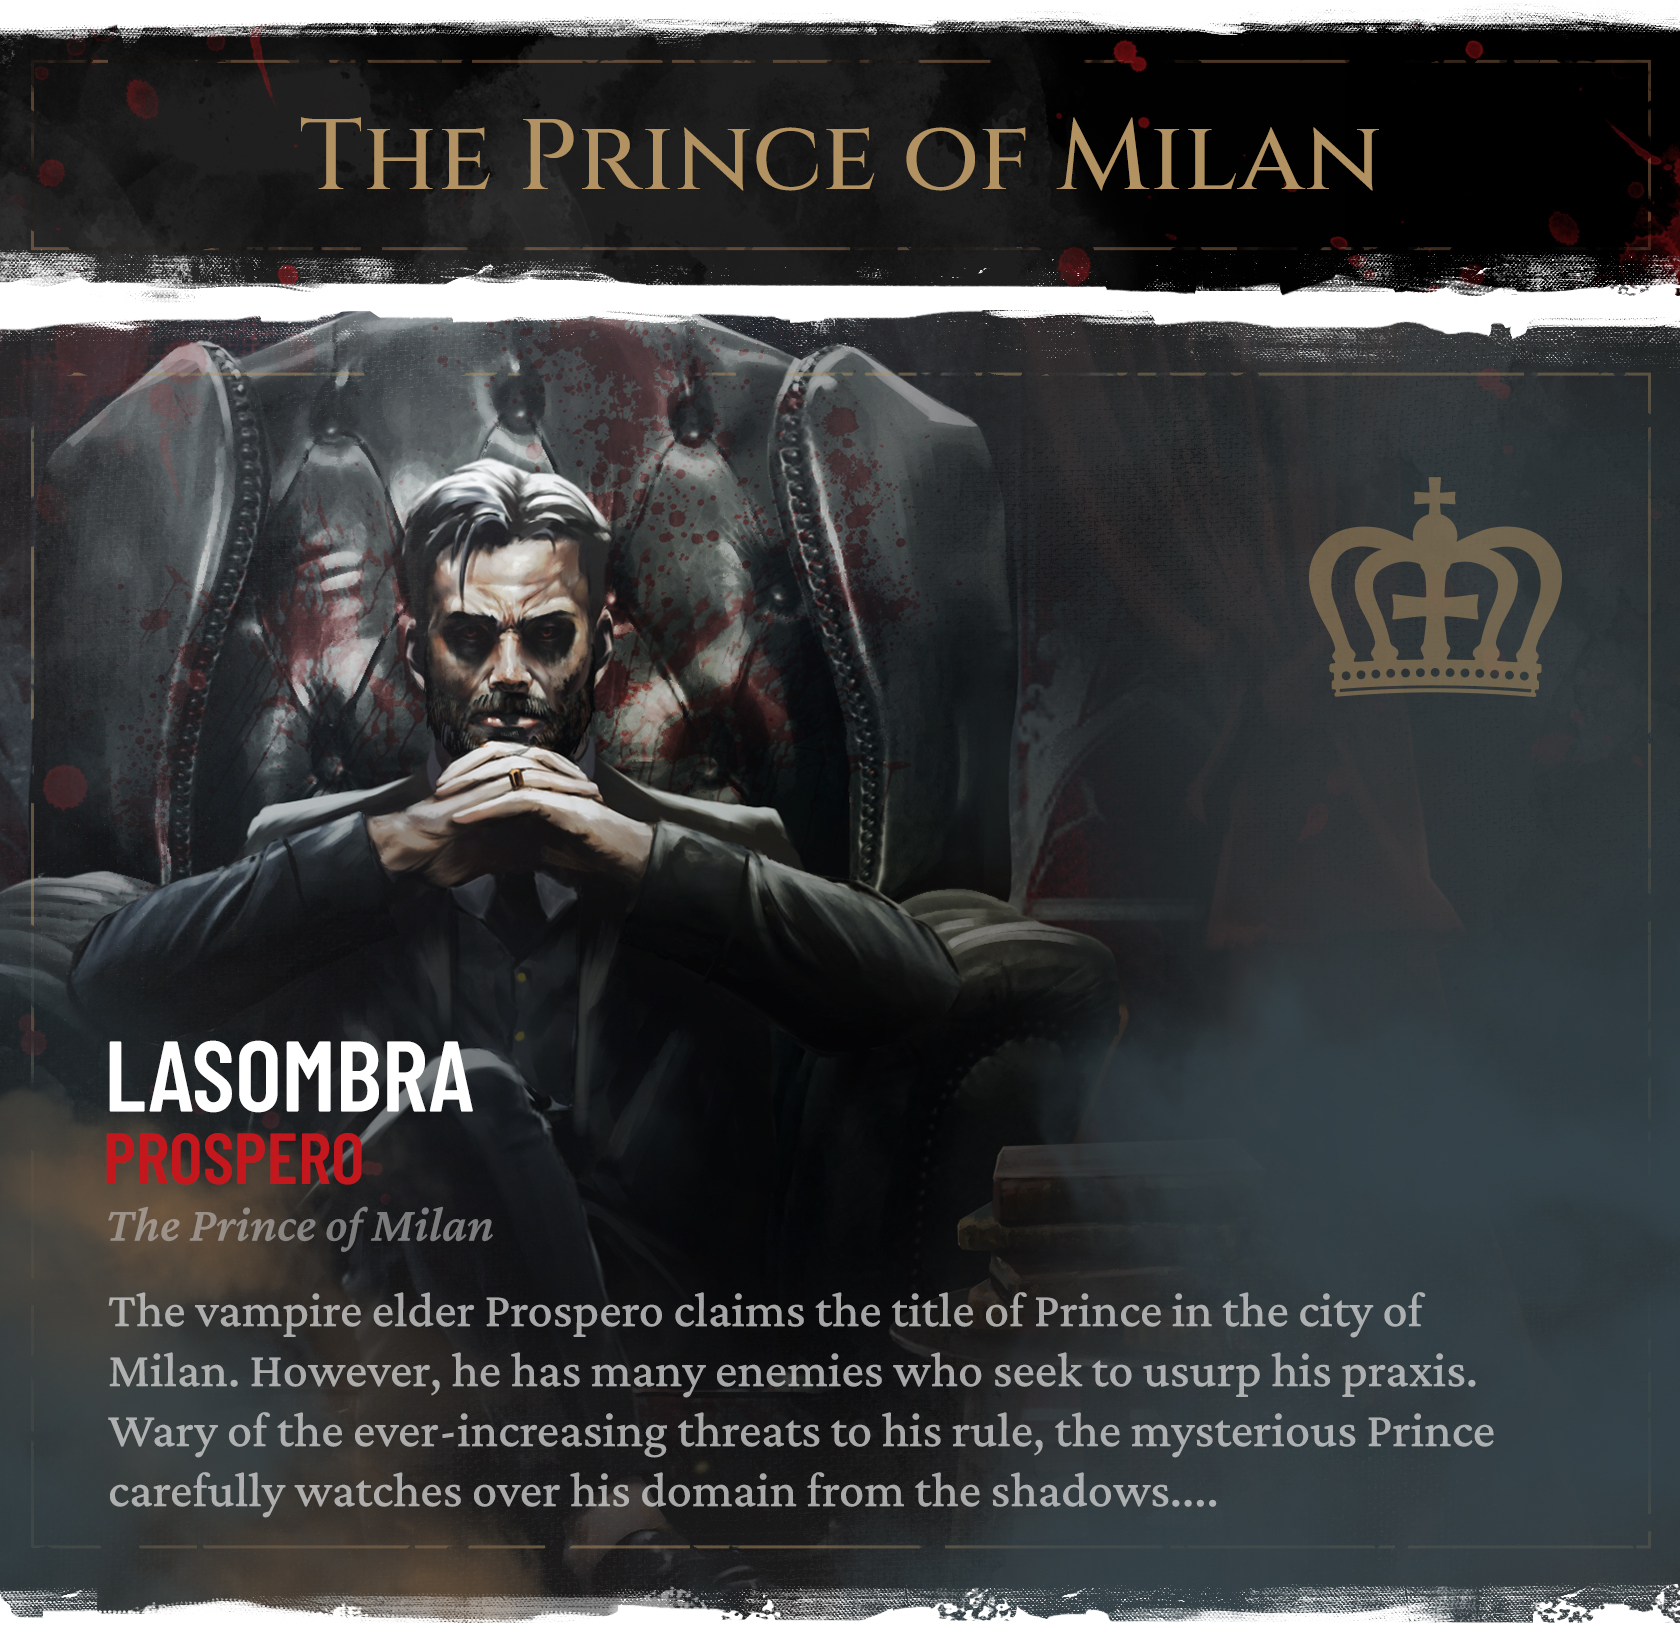 Vampire: The Masquerade - Milan Uprising by Teburu - The Chronicle of Milan  Uprising - Gamefound